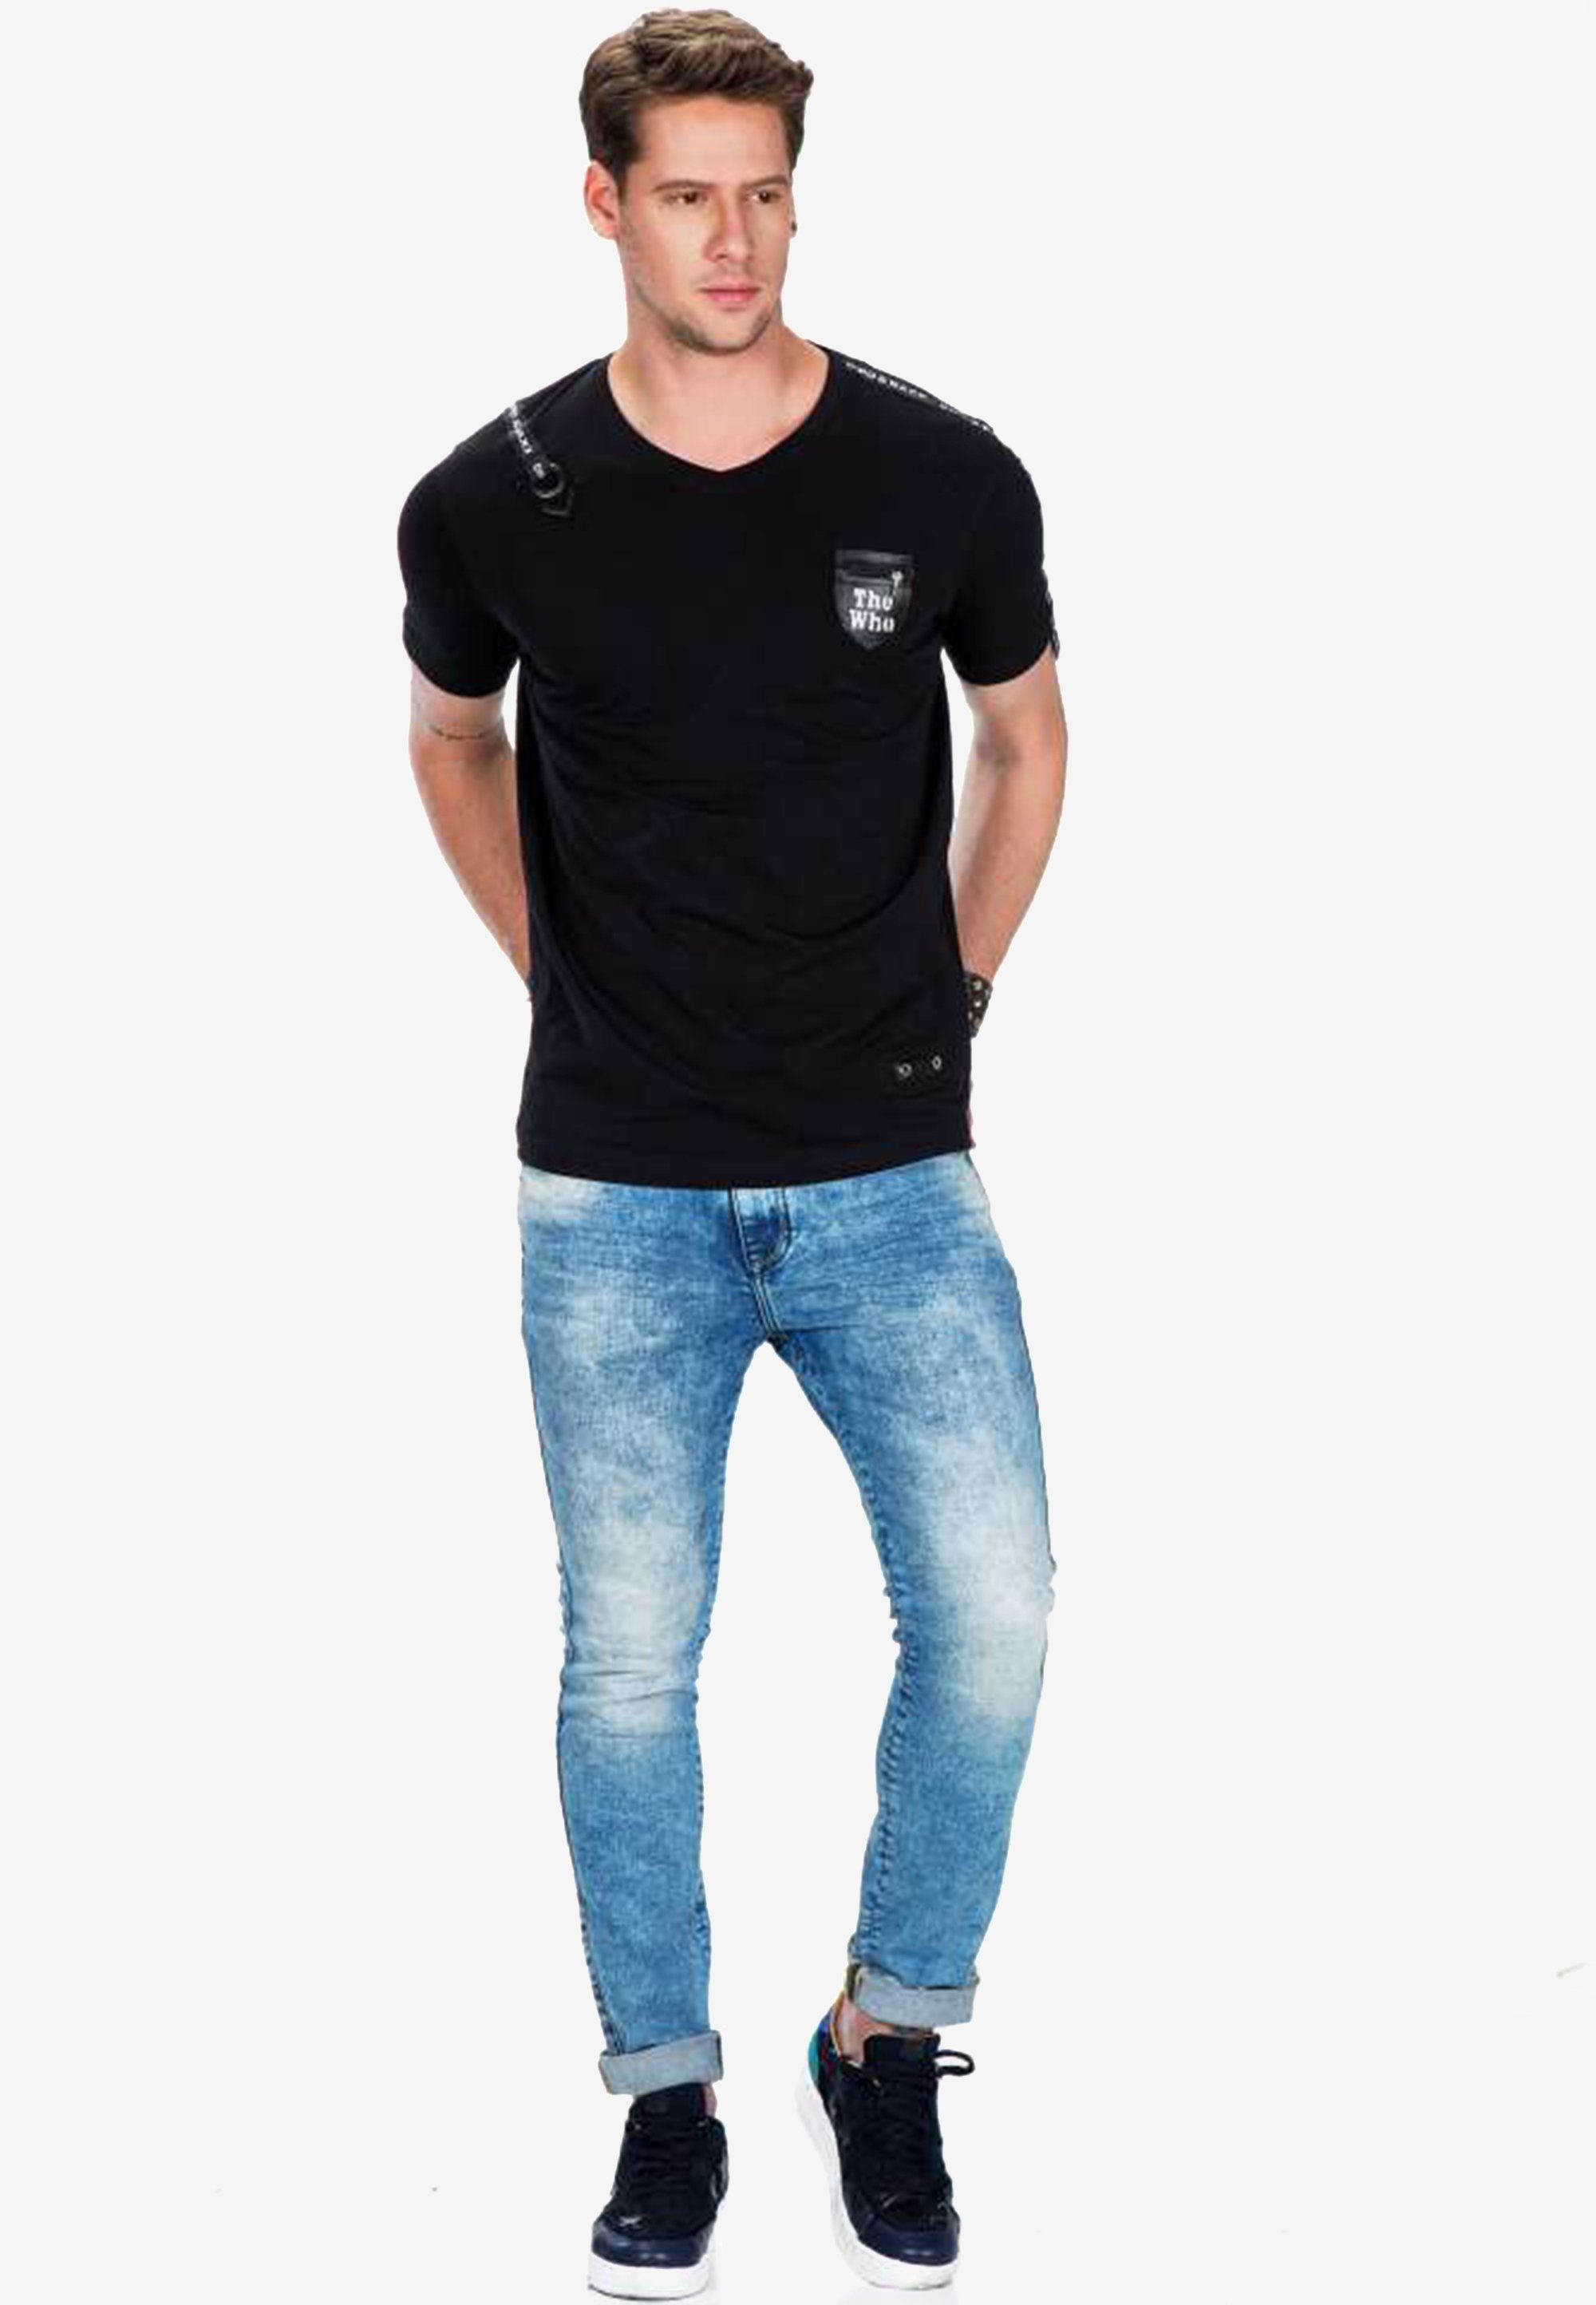 Baxx Motivtasche T-Shirt kleiner mit Cipo & schwarz